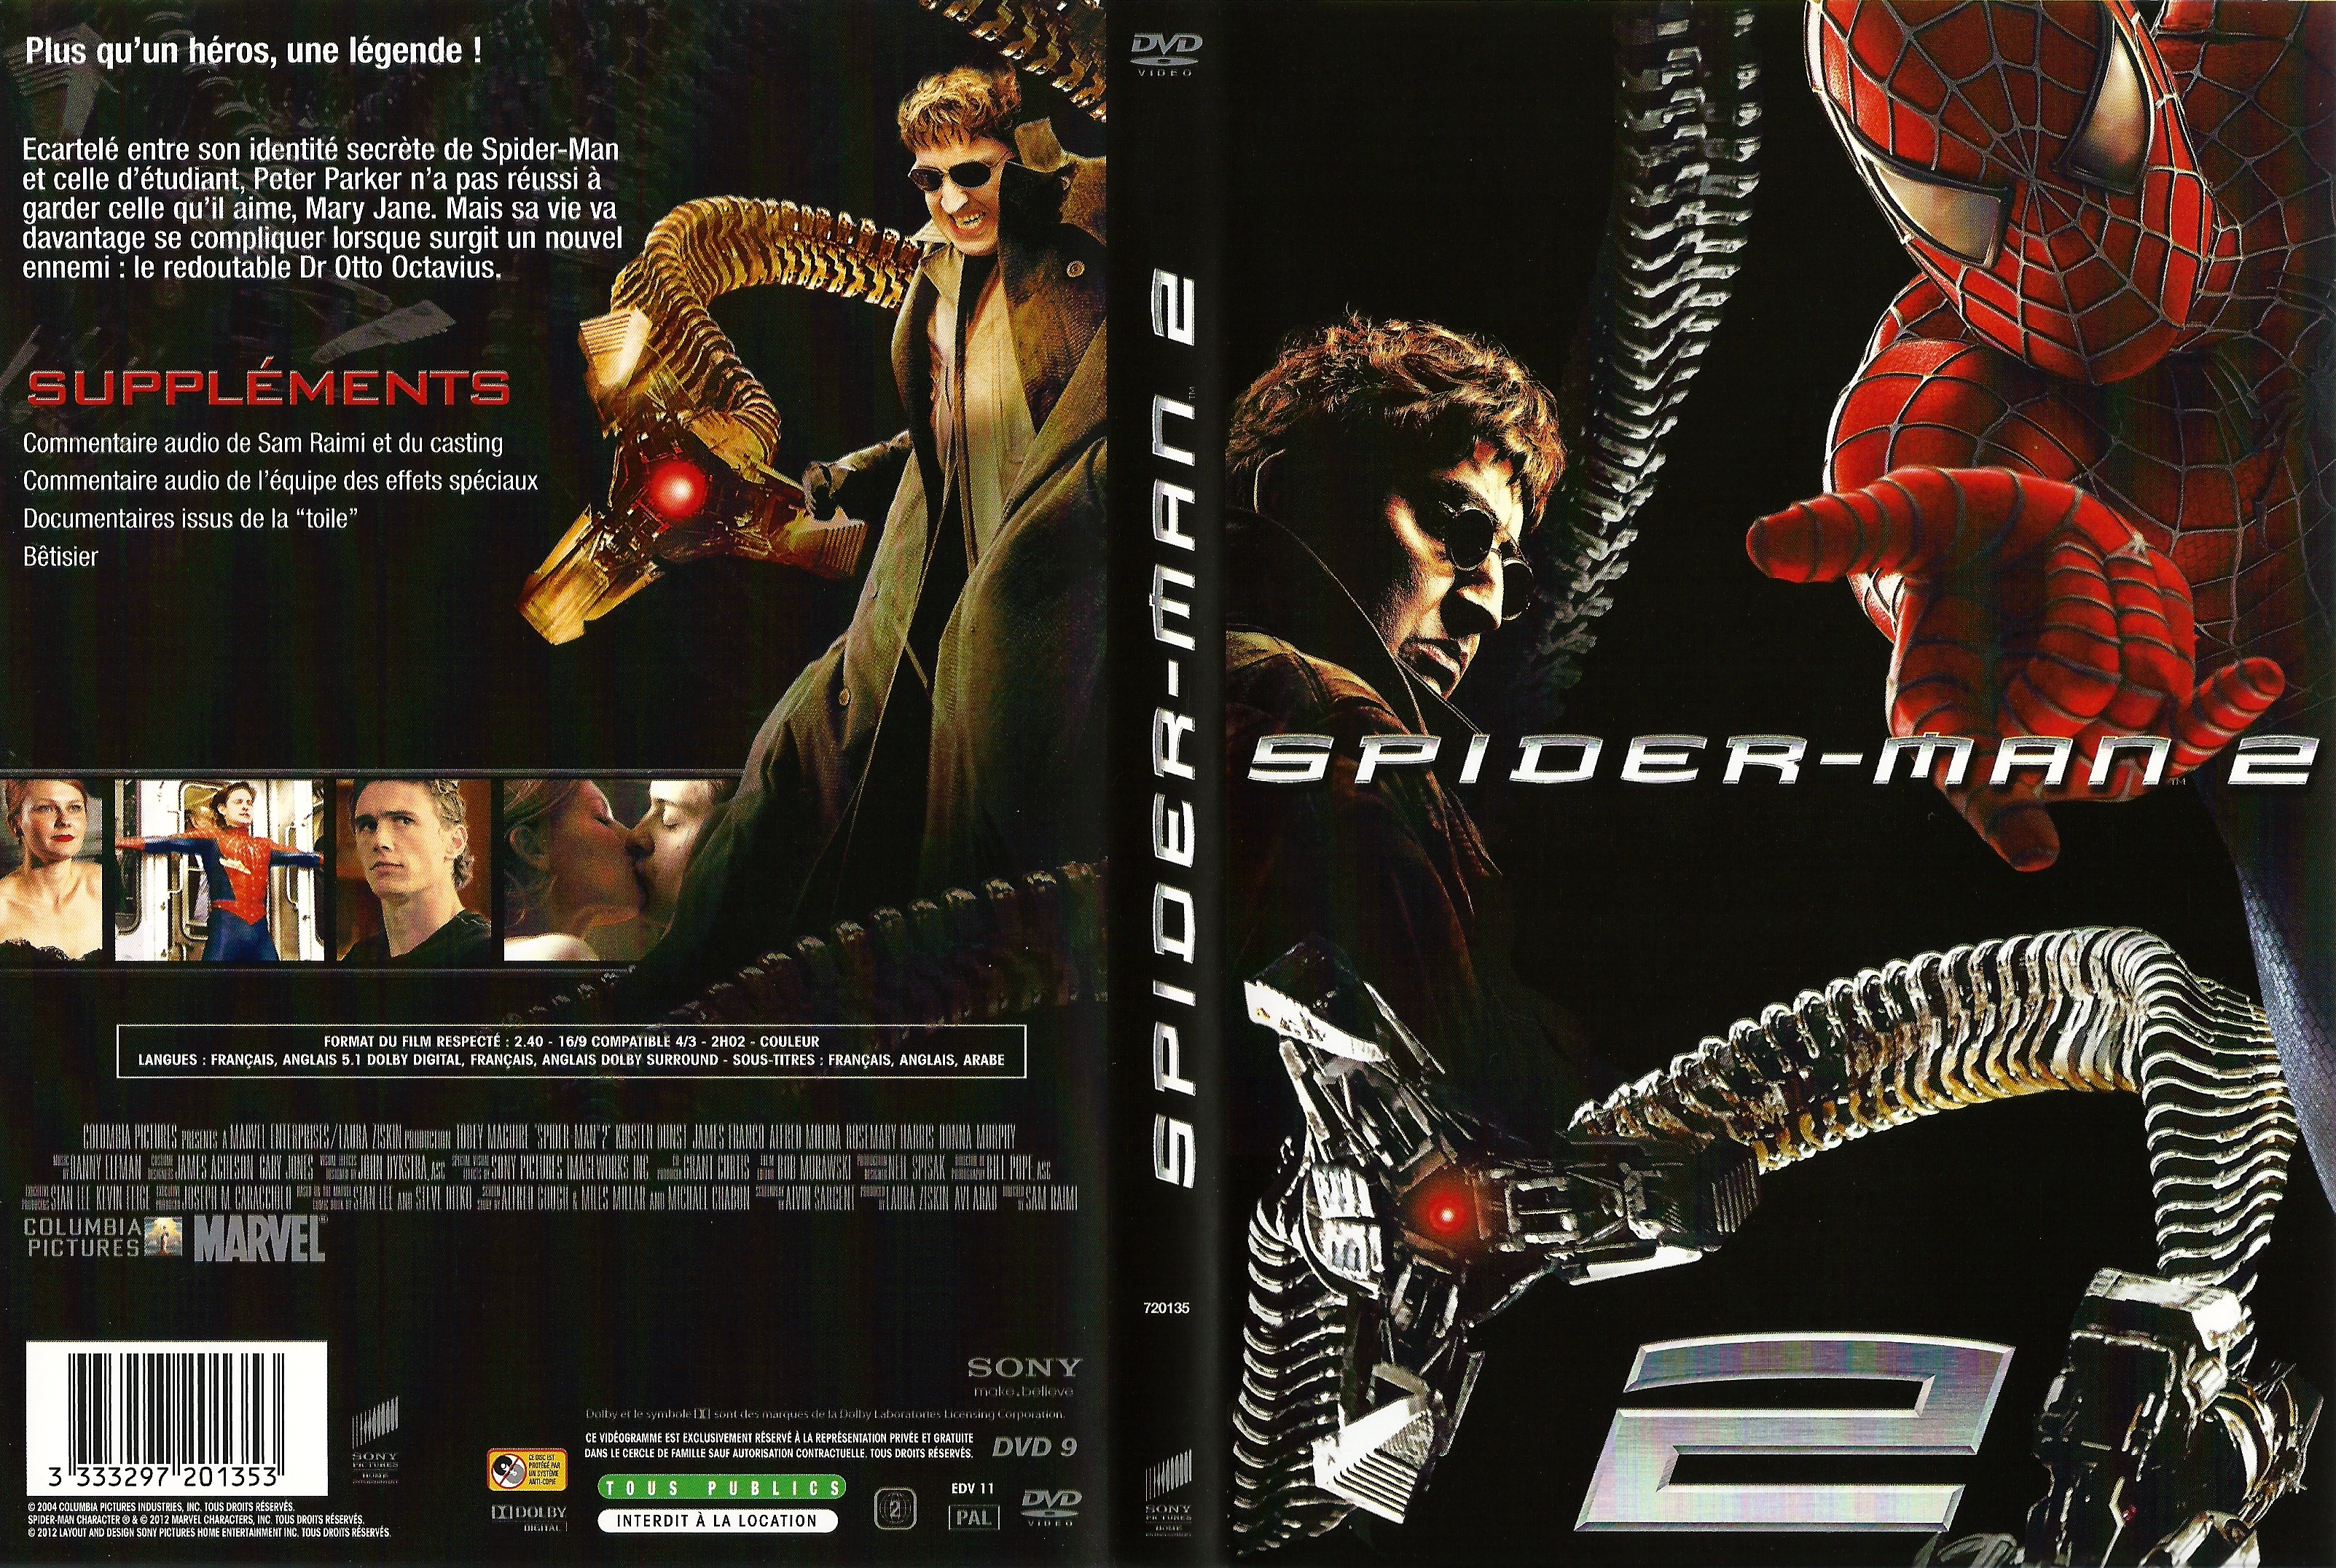 Jaquette DVD Spiderman 2 v6